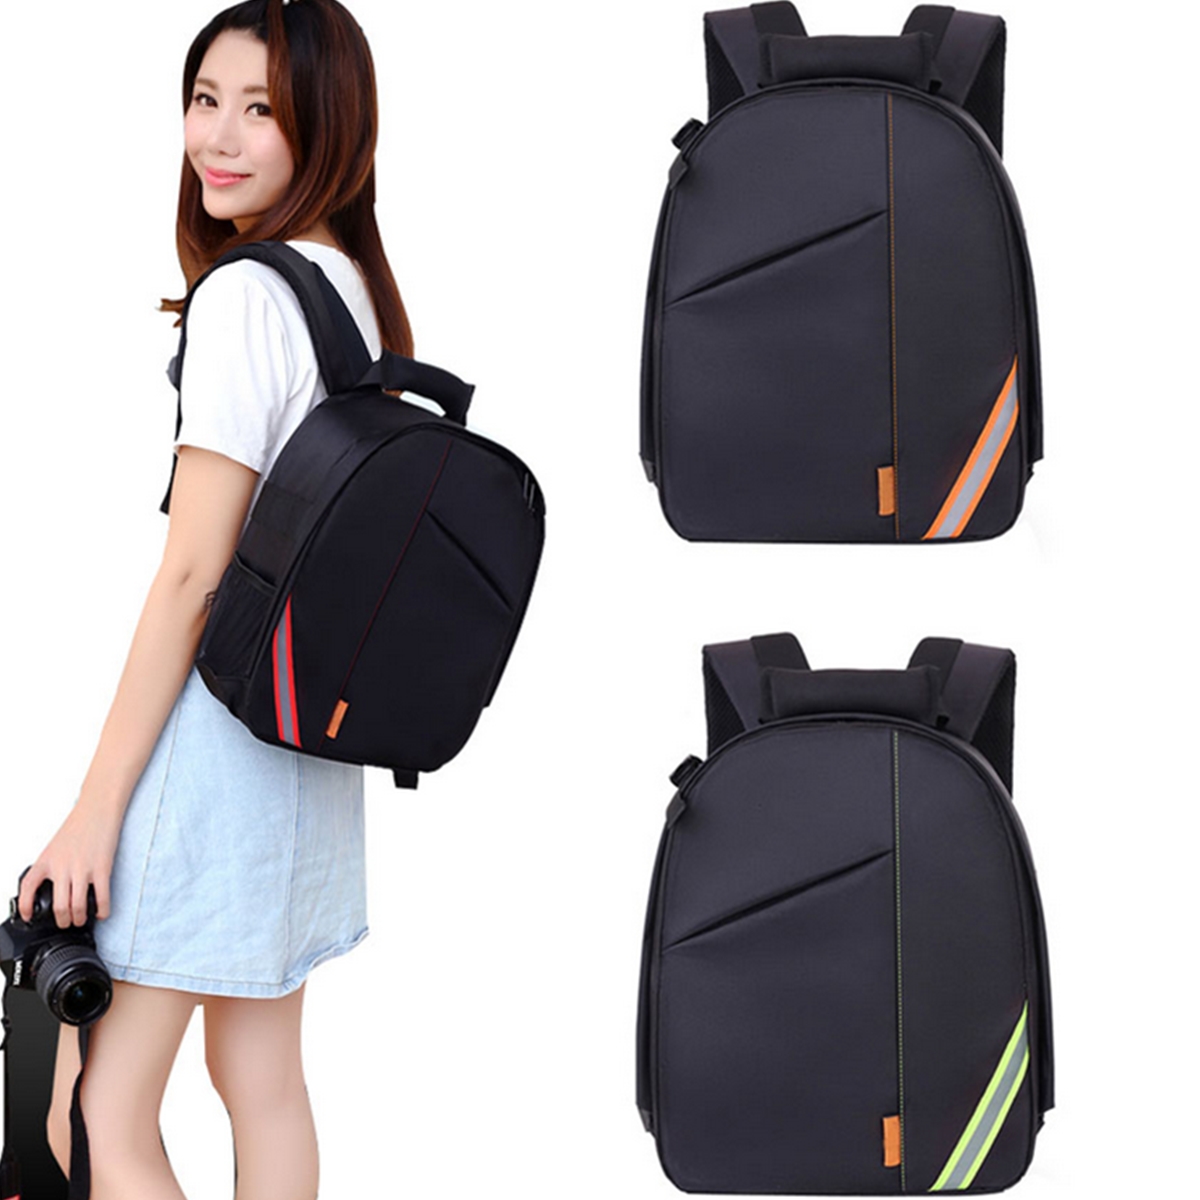 Waterproof-Shoulder-Bag-Backpack-Rucksack-With-Reflective-Stripe-For-DSLR-Camera-1378394-5